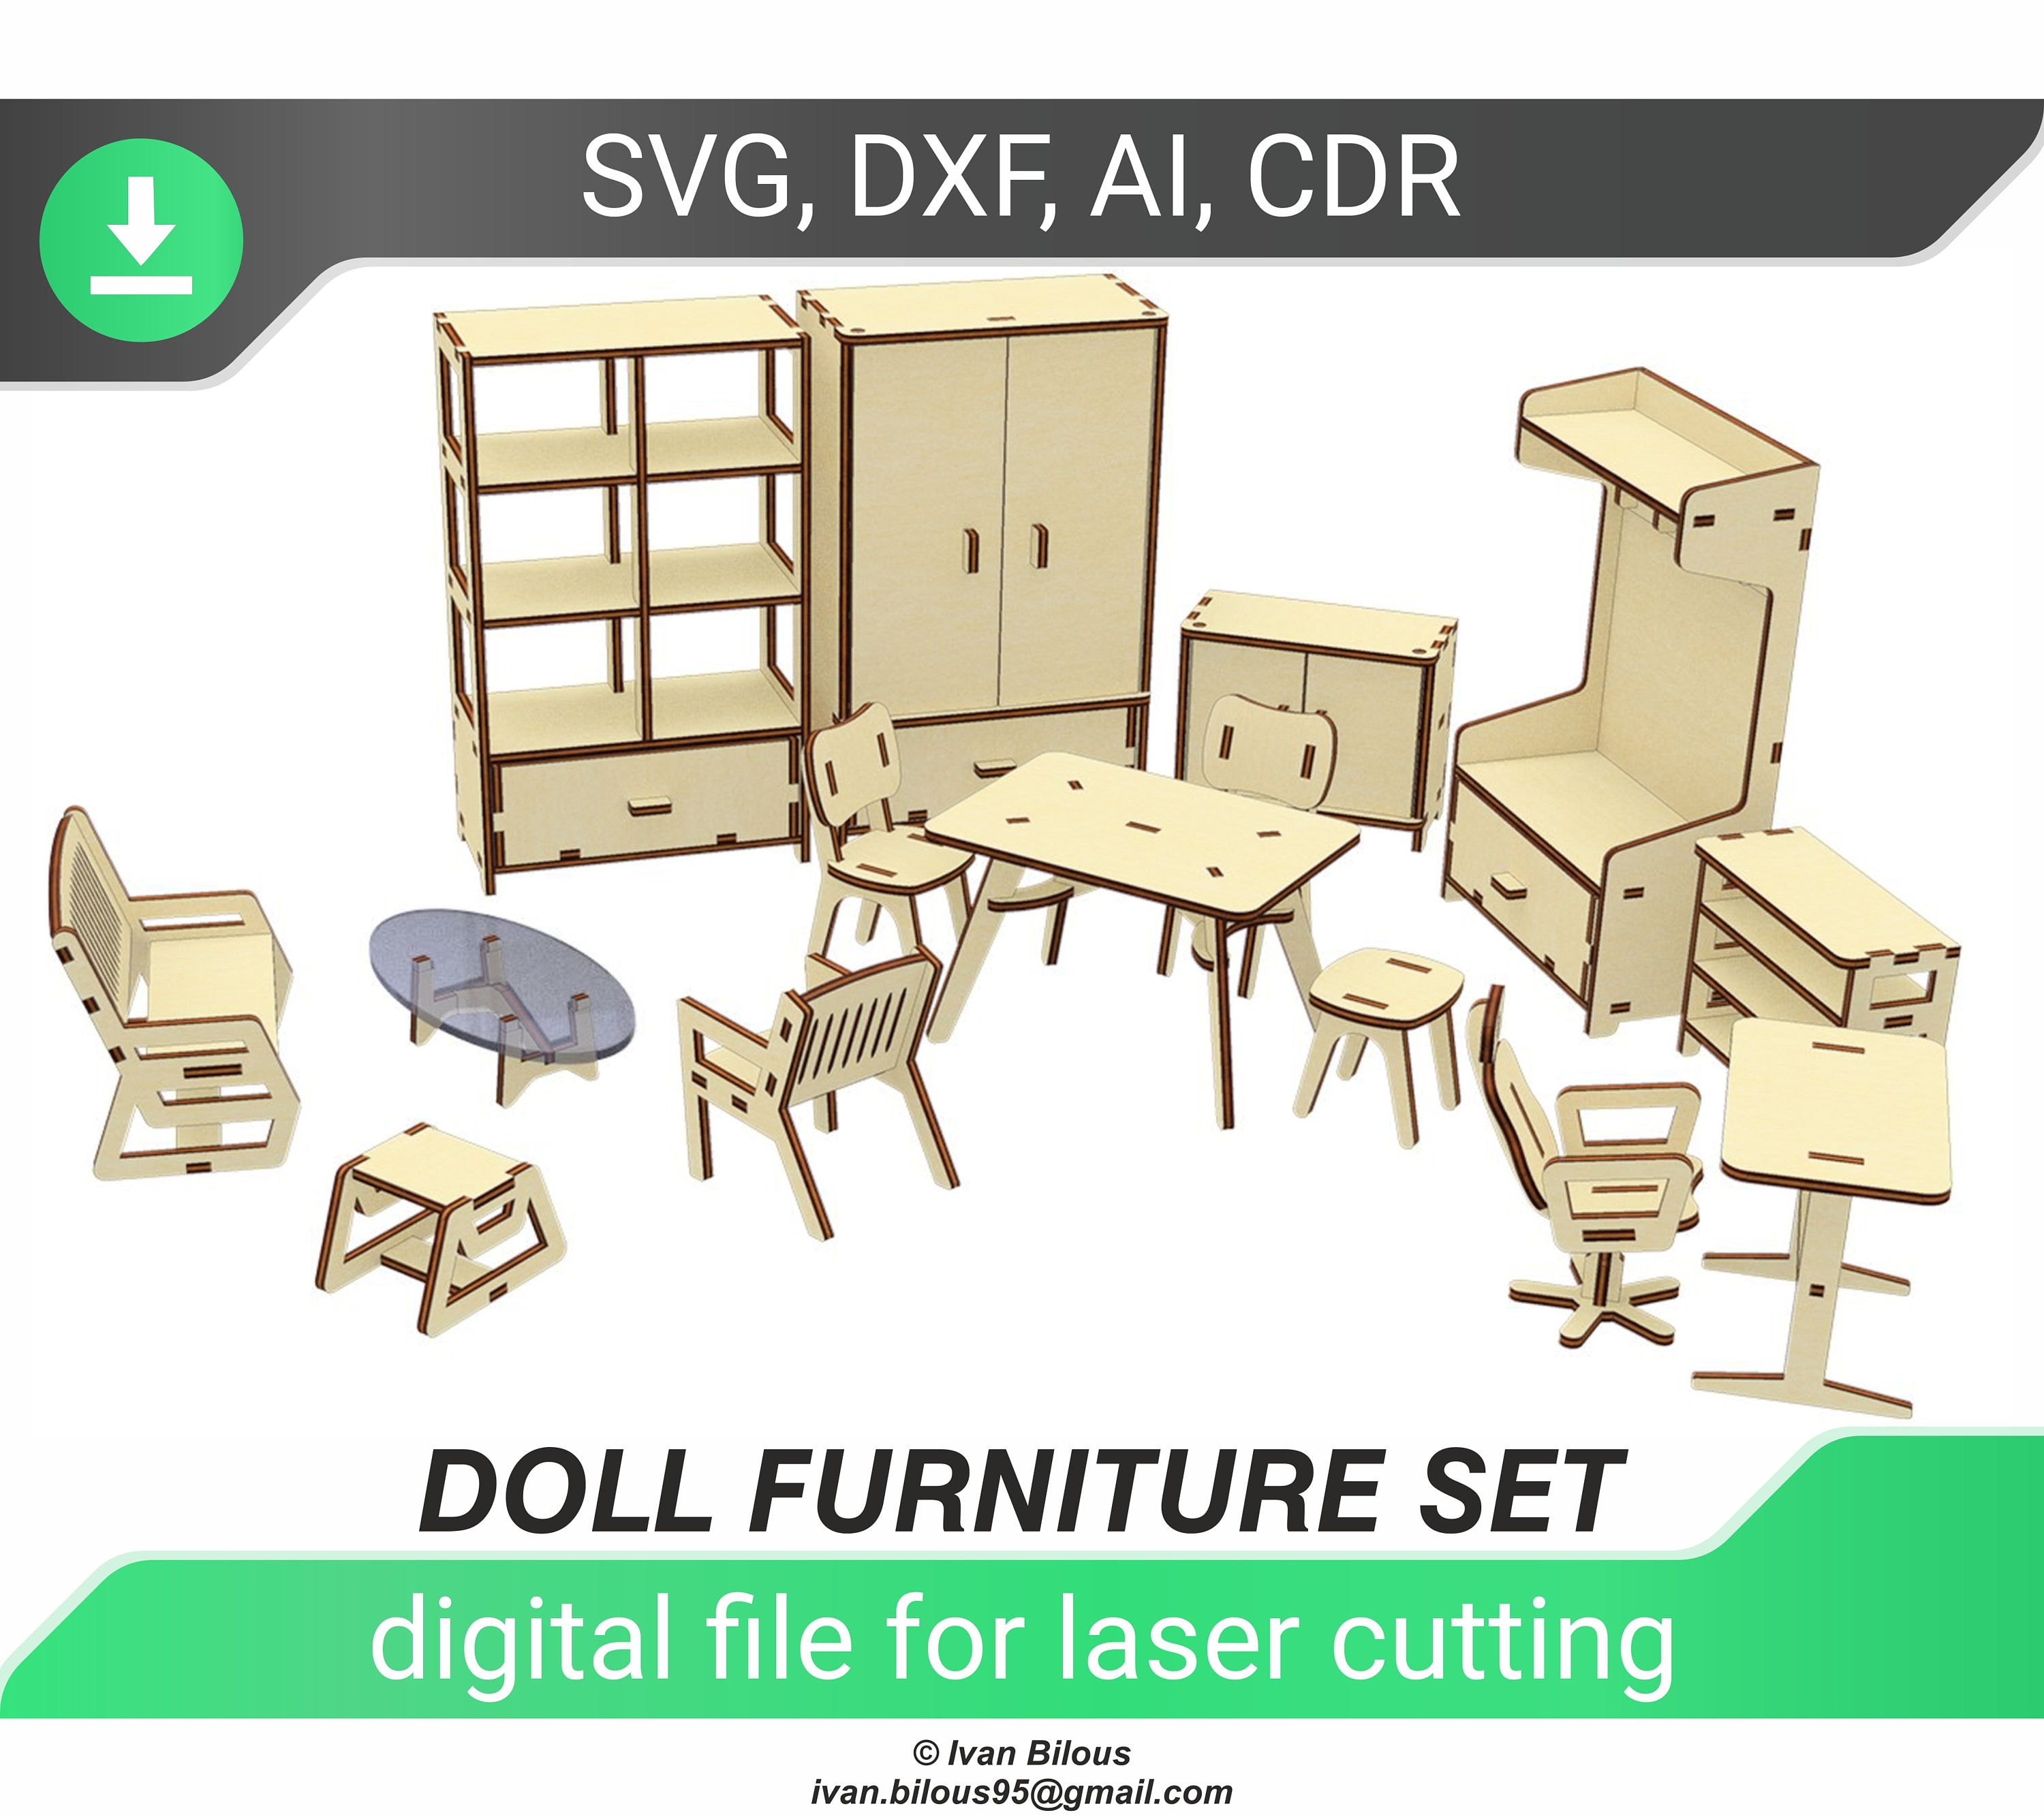 tidligere Ledelse Forhandle Doll Furniture Set Laser Cutting Digital File Glowforge - Etsy